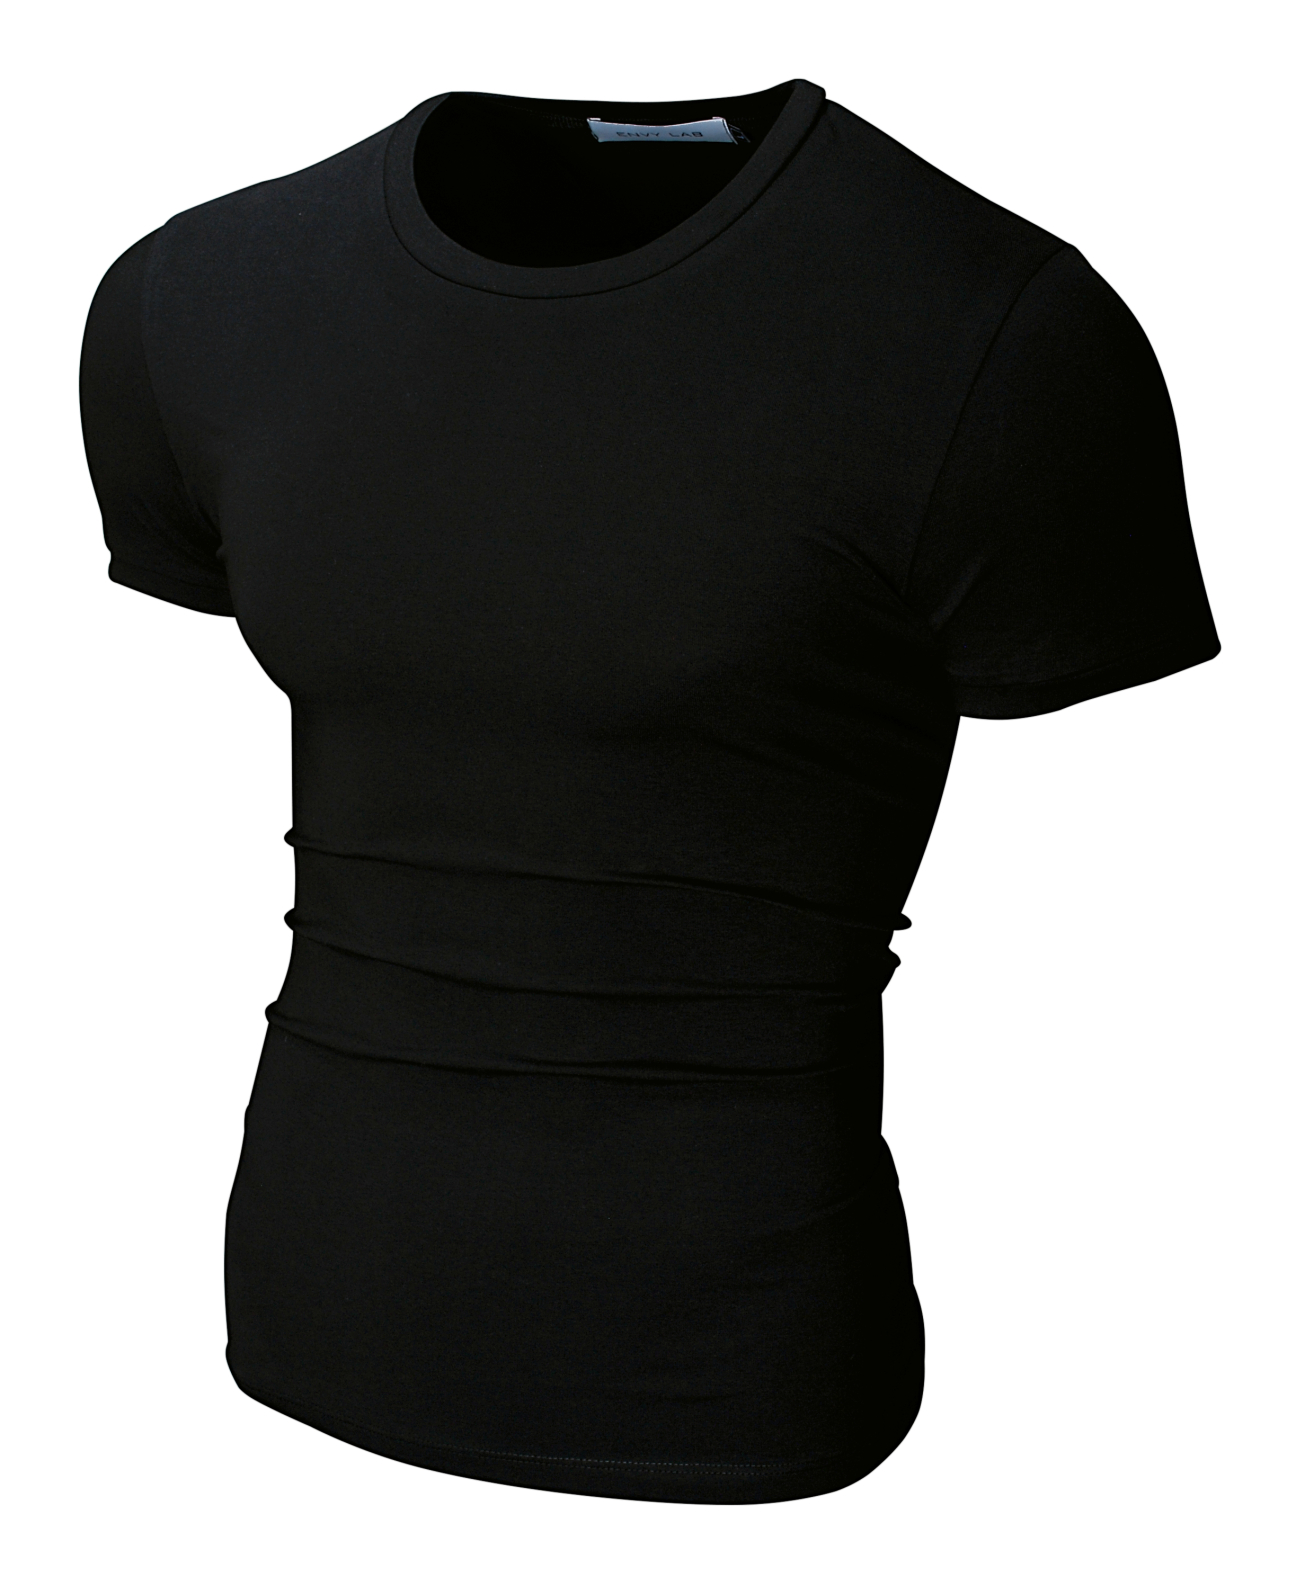 картинка товара футболка round black в магазине Envy LAB